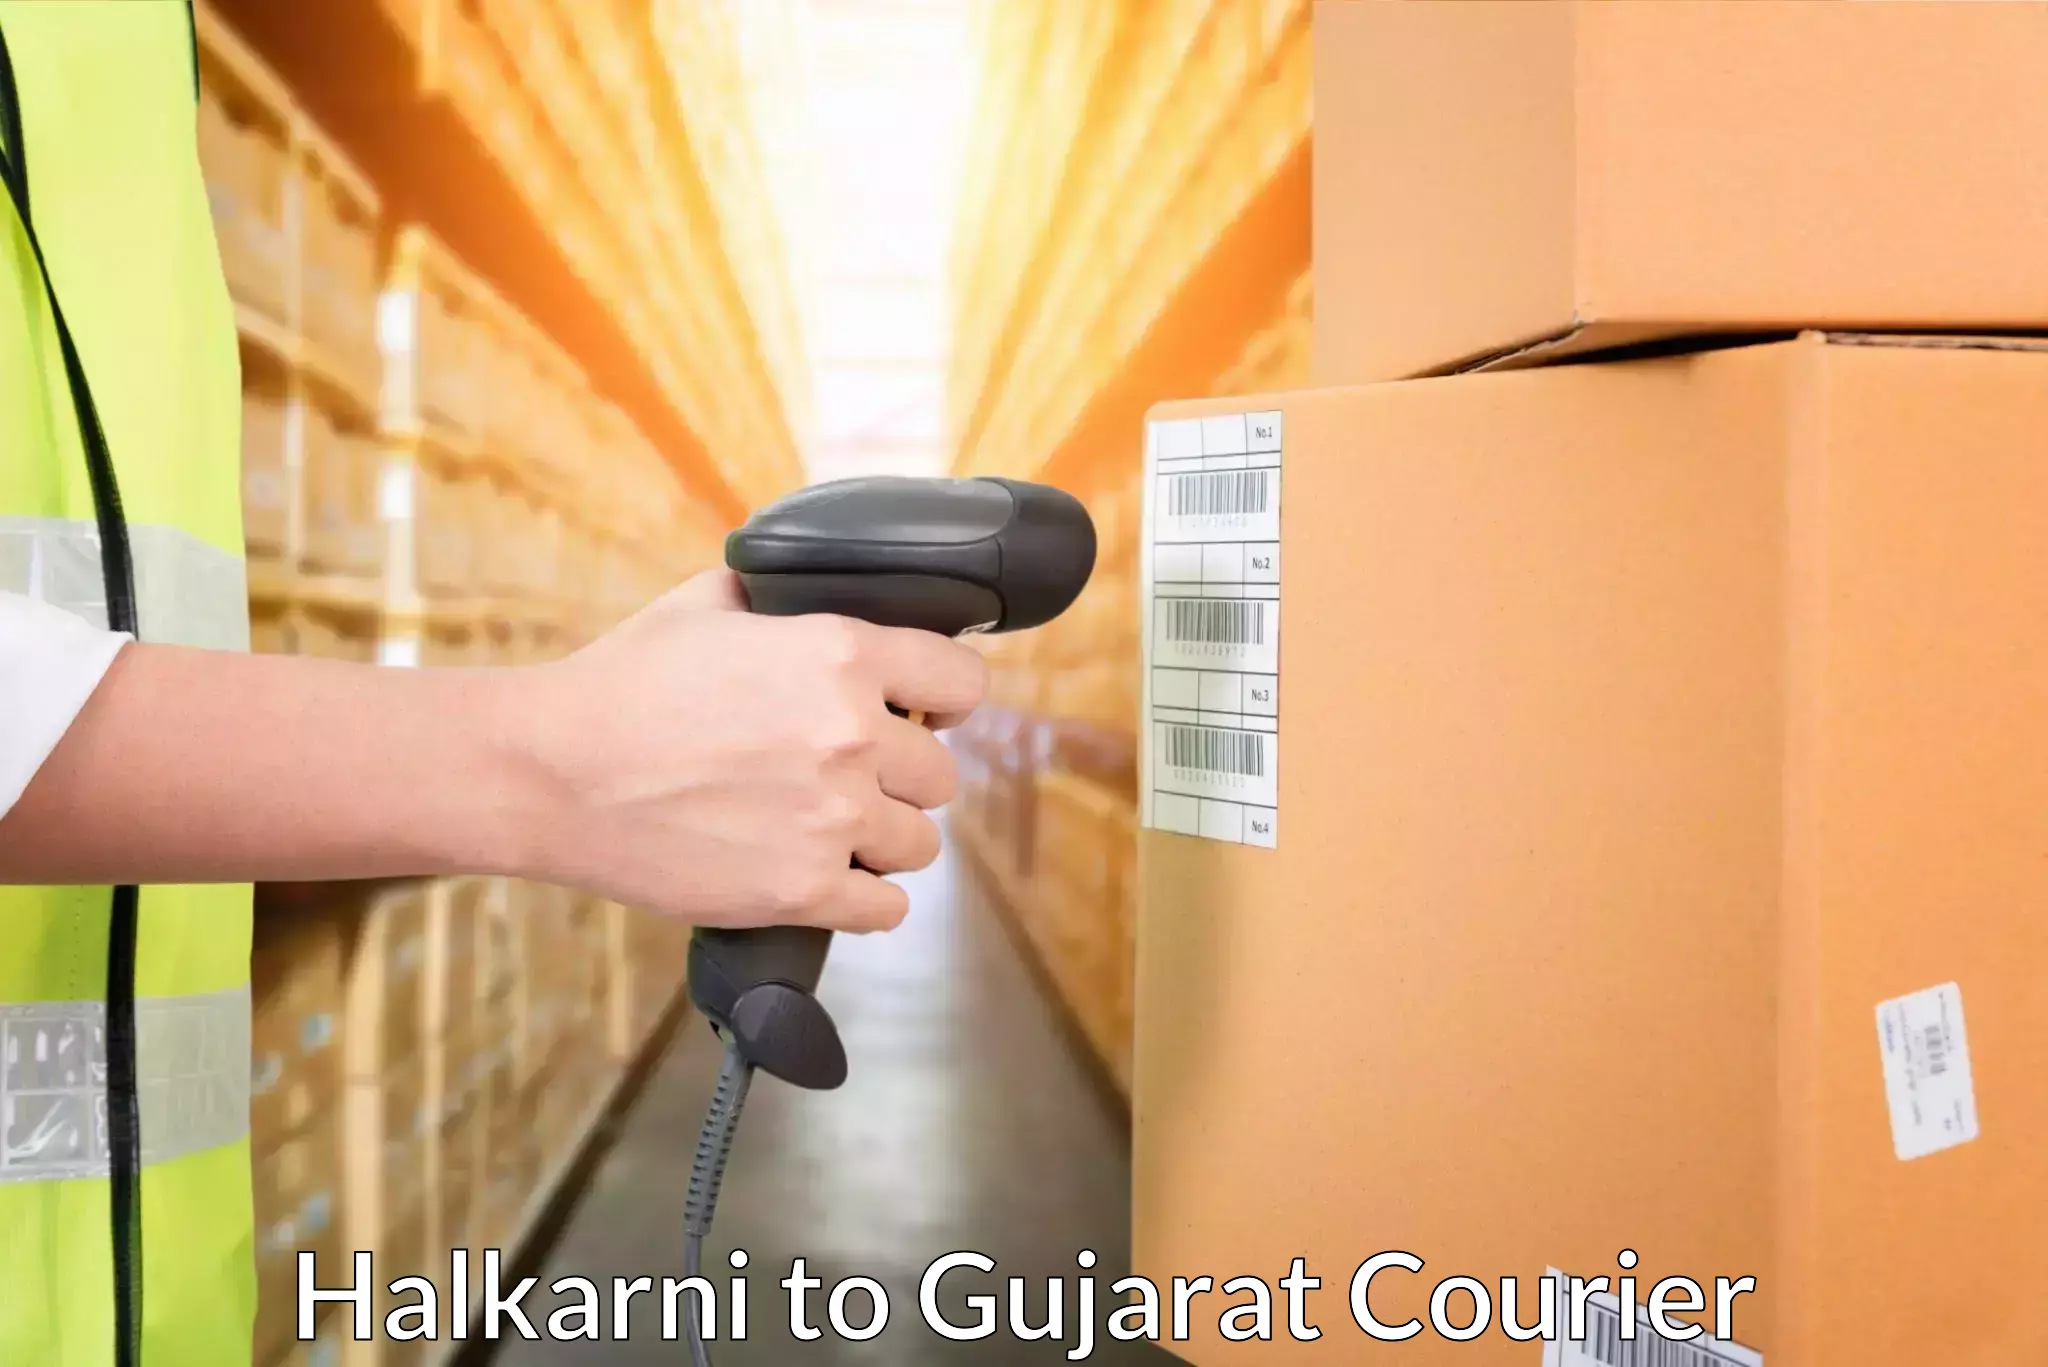 Urban courier service Halkarni to Gujarat